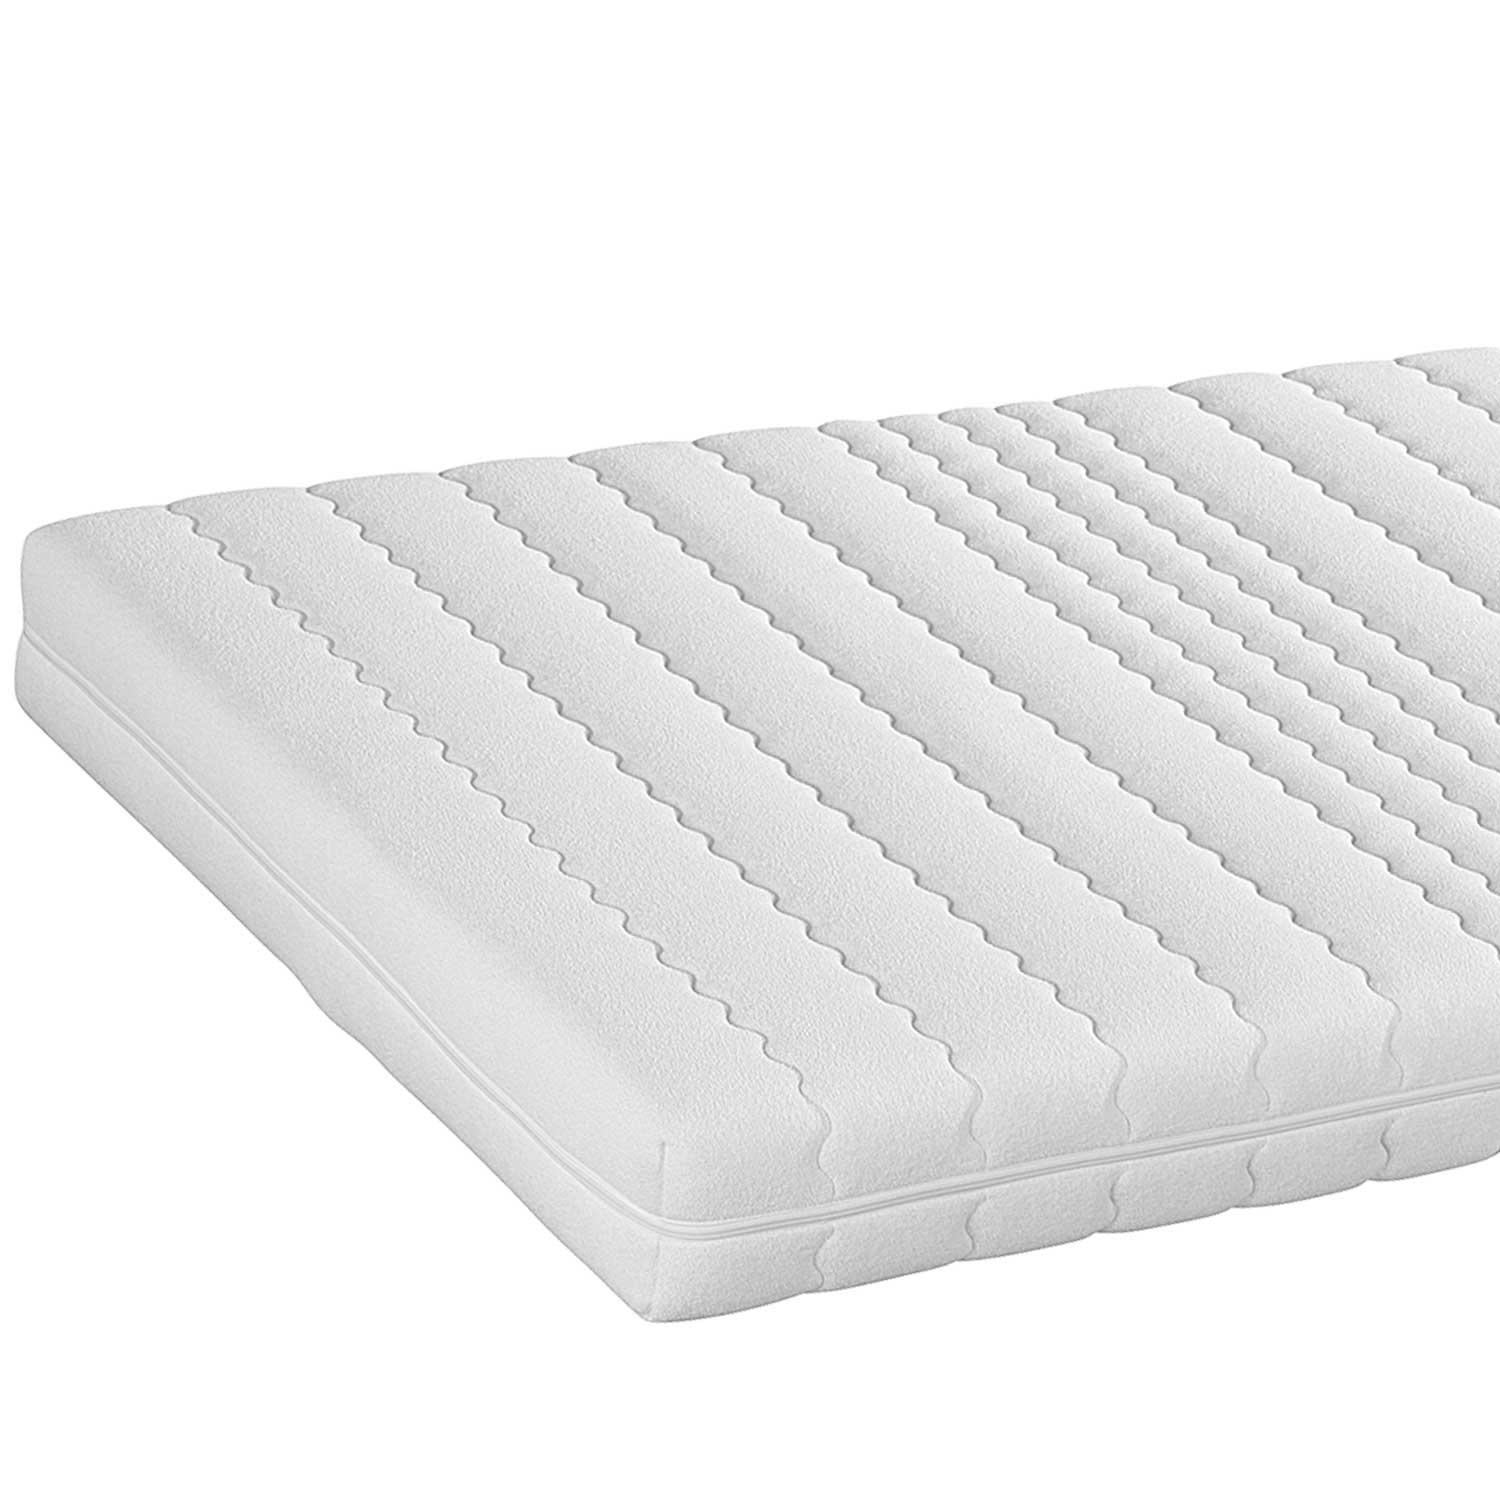 Malie 7 zone cold foam mattress